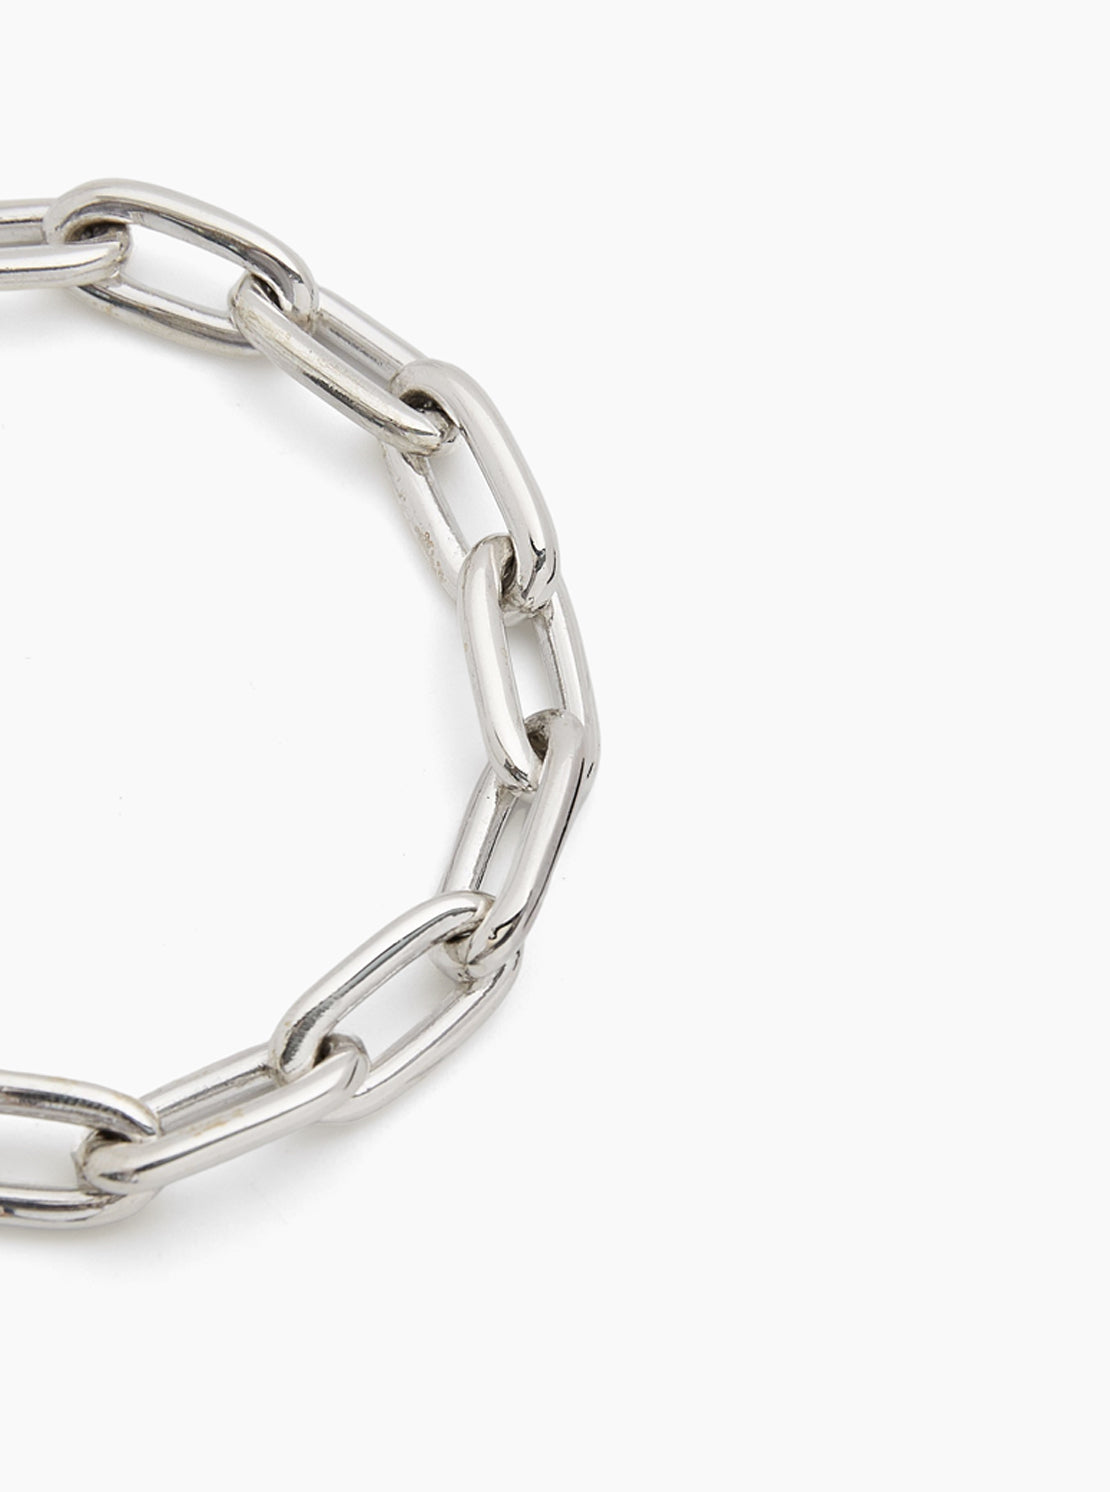 Small silver oval linked bracelet